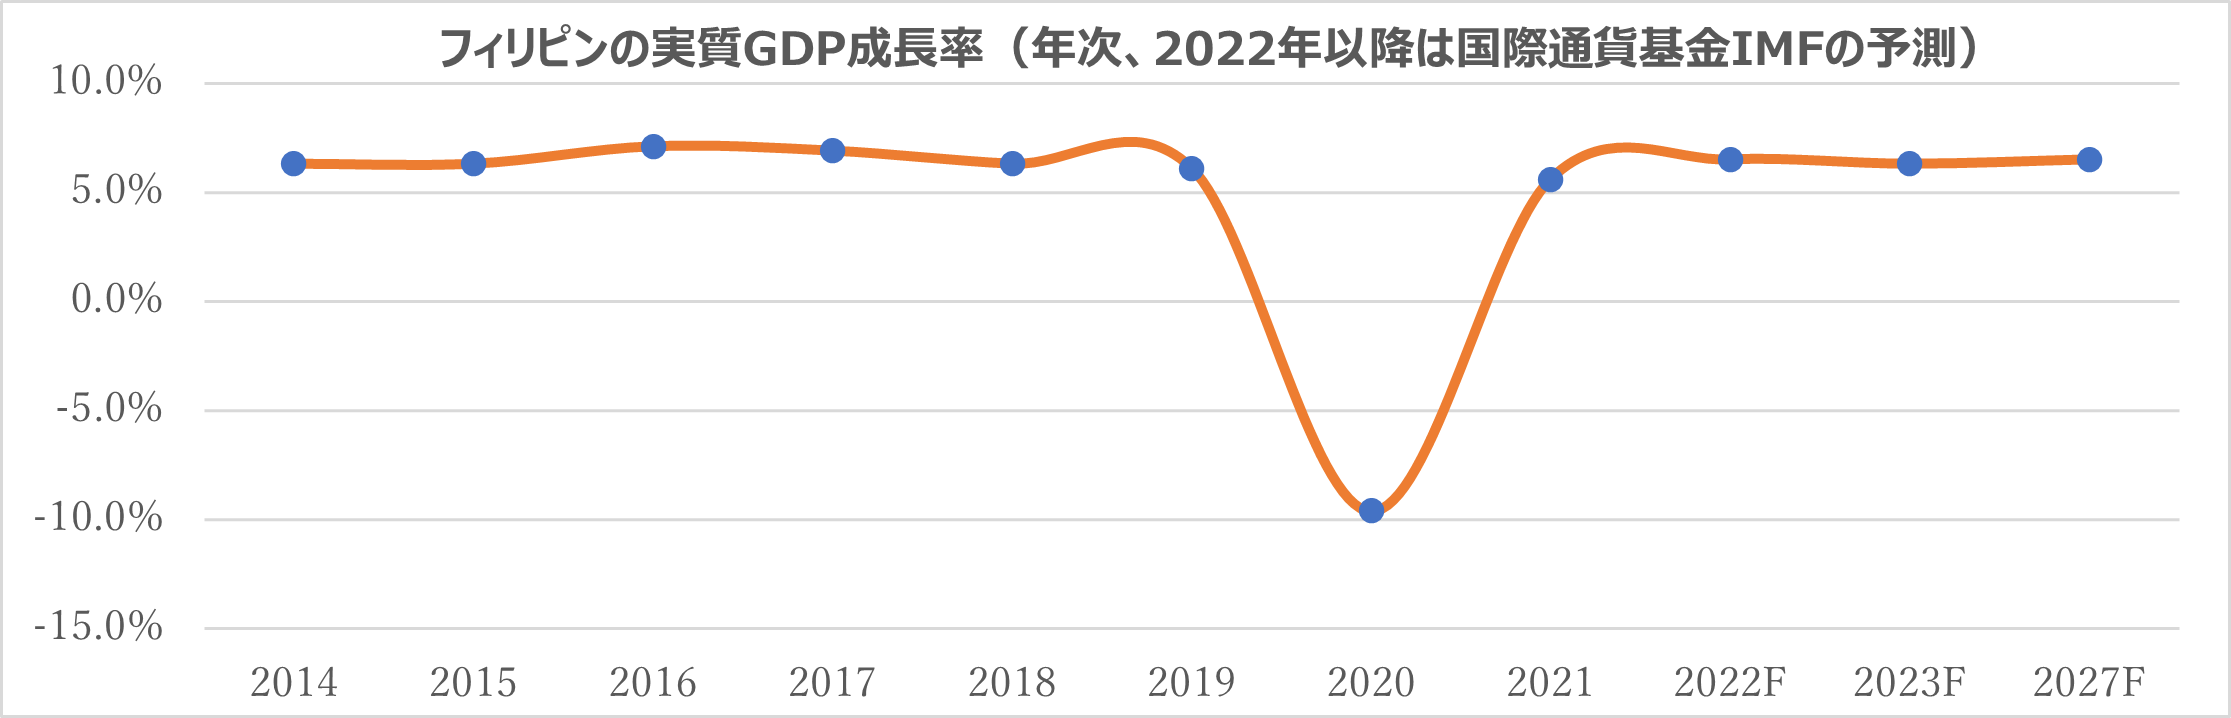 フィリピンの2022年第2四半期GDP成長率は7.4%